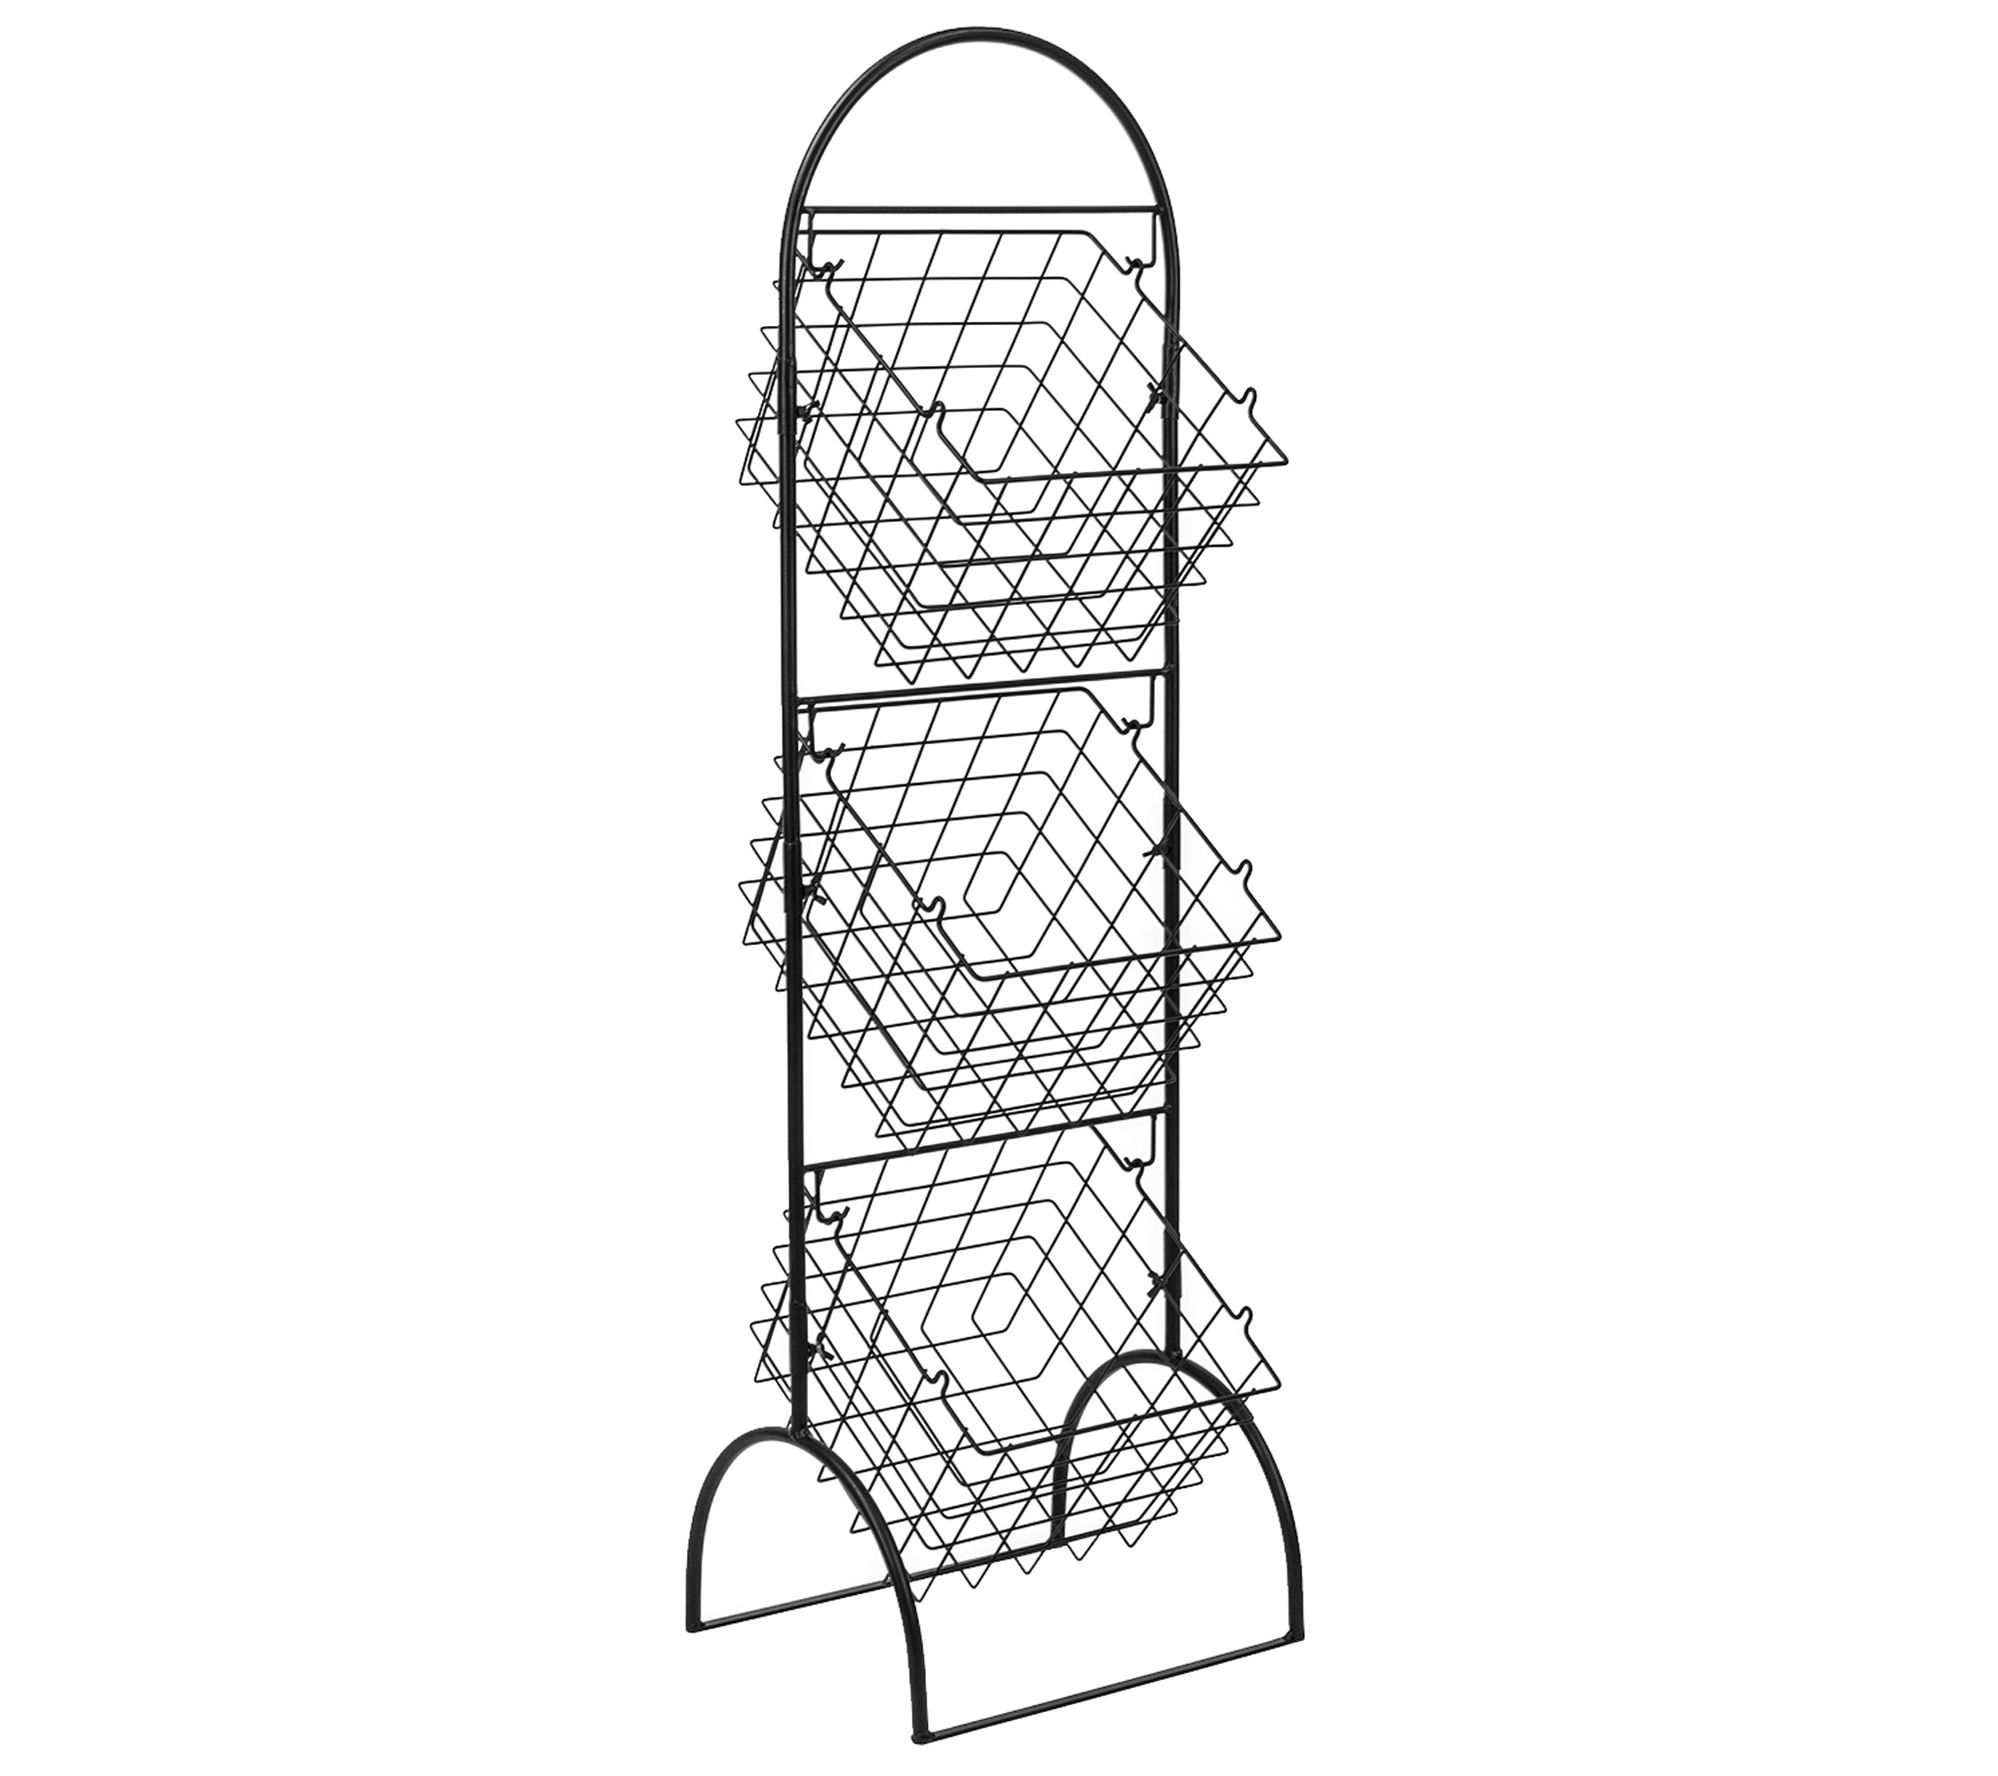 Sorbus 3-Tier Wire Market Basket Storage Stand